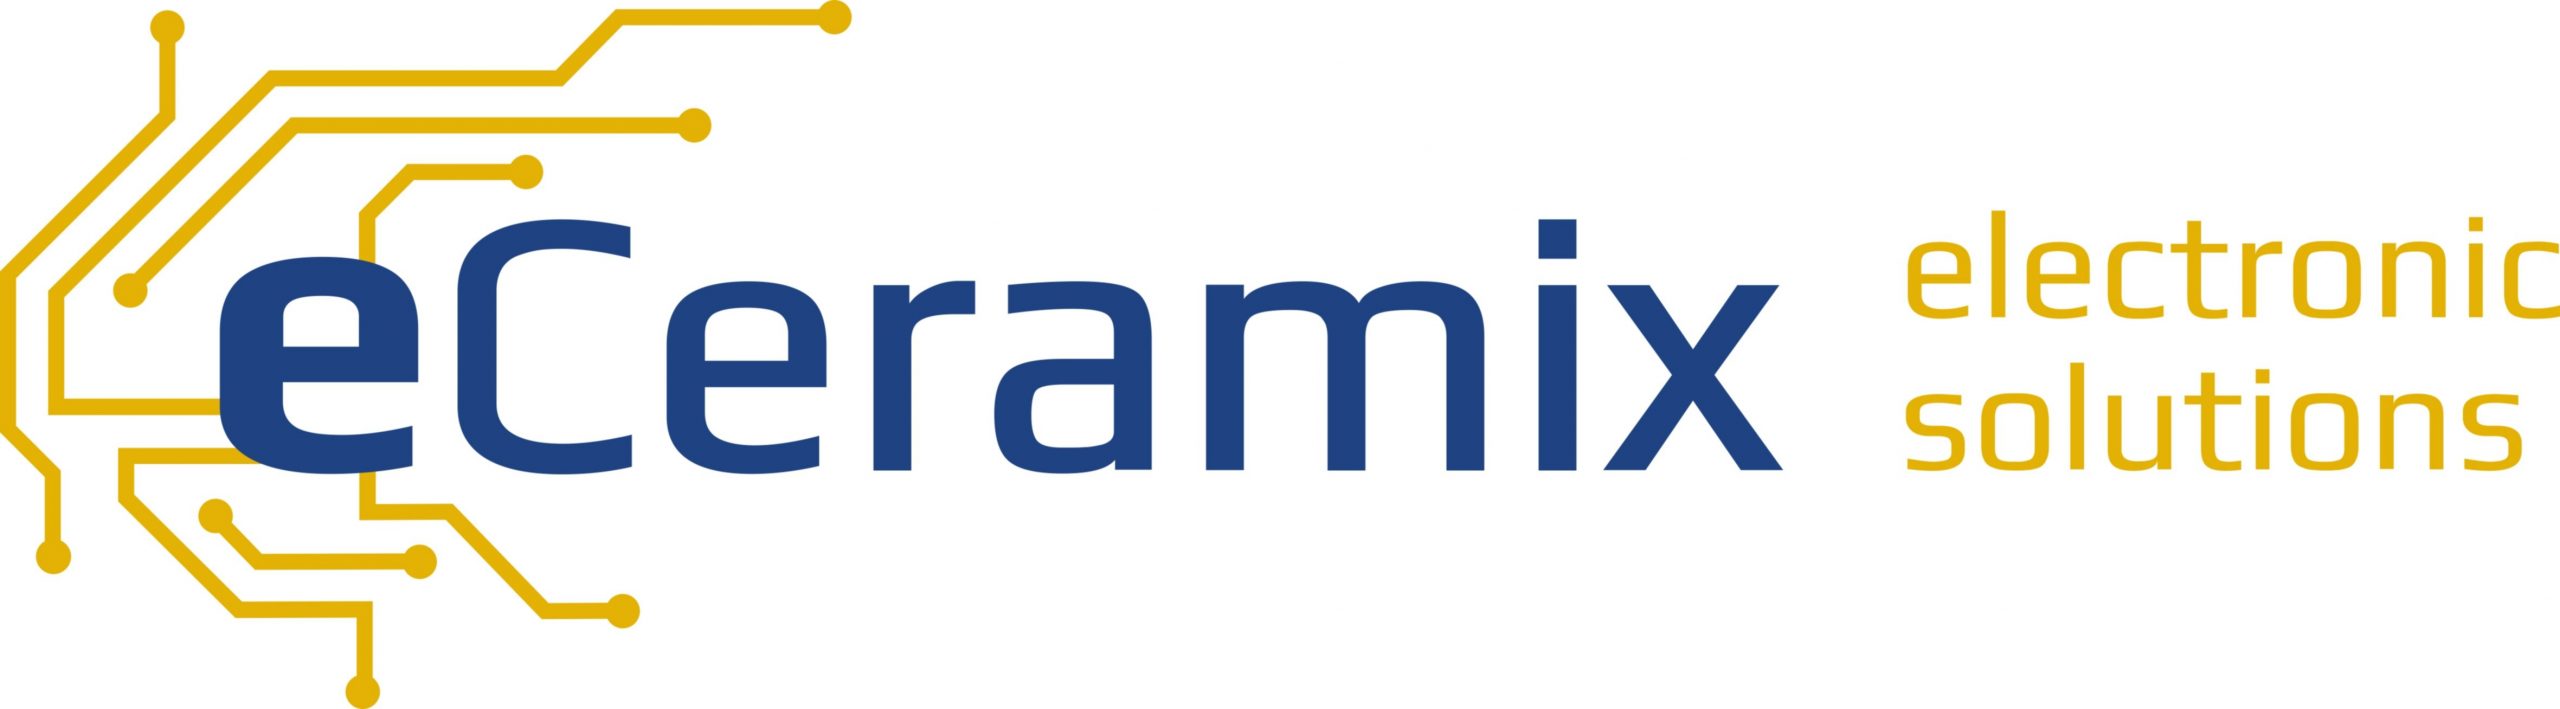  eCeramix GmbH